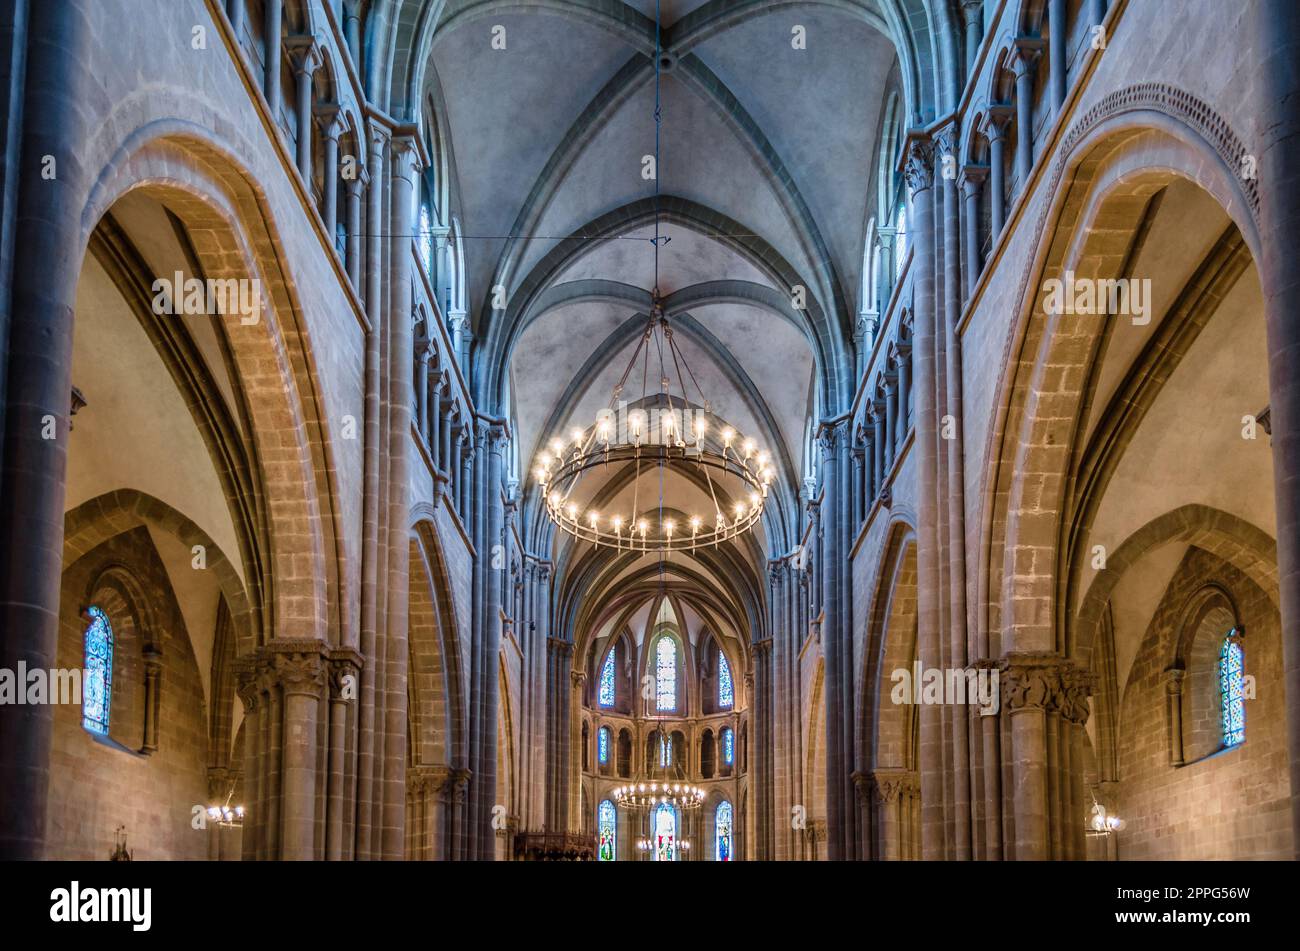 GENF, SCHWEIZ - 4. SEPTEMBER 2013: Das Innere von St. Die Pierre-Kathedrale in Genf, Schweiz, erbaut als römisch-katholische Kathedrale, wurde aber zu einer reformierten protestantischen Kirche, bekannt als die adoptierte Heimatkirche von John Calvin, einem der Führer des Pro Stockfoto